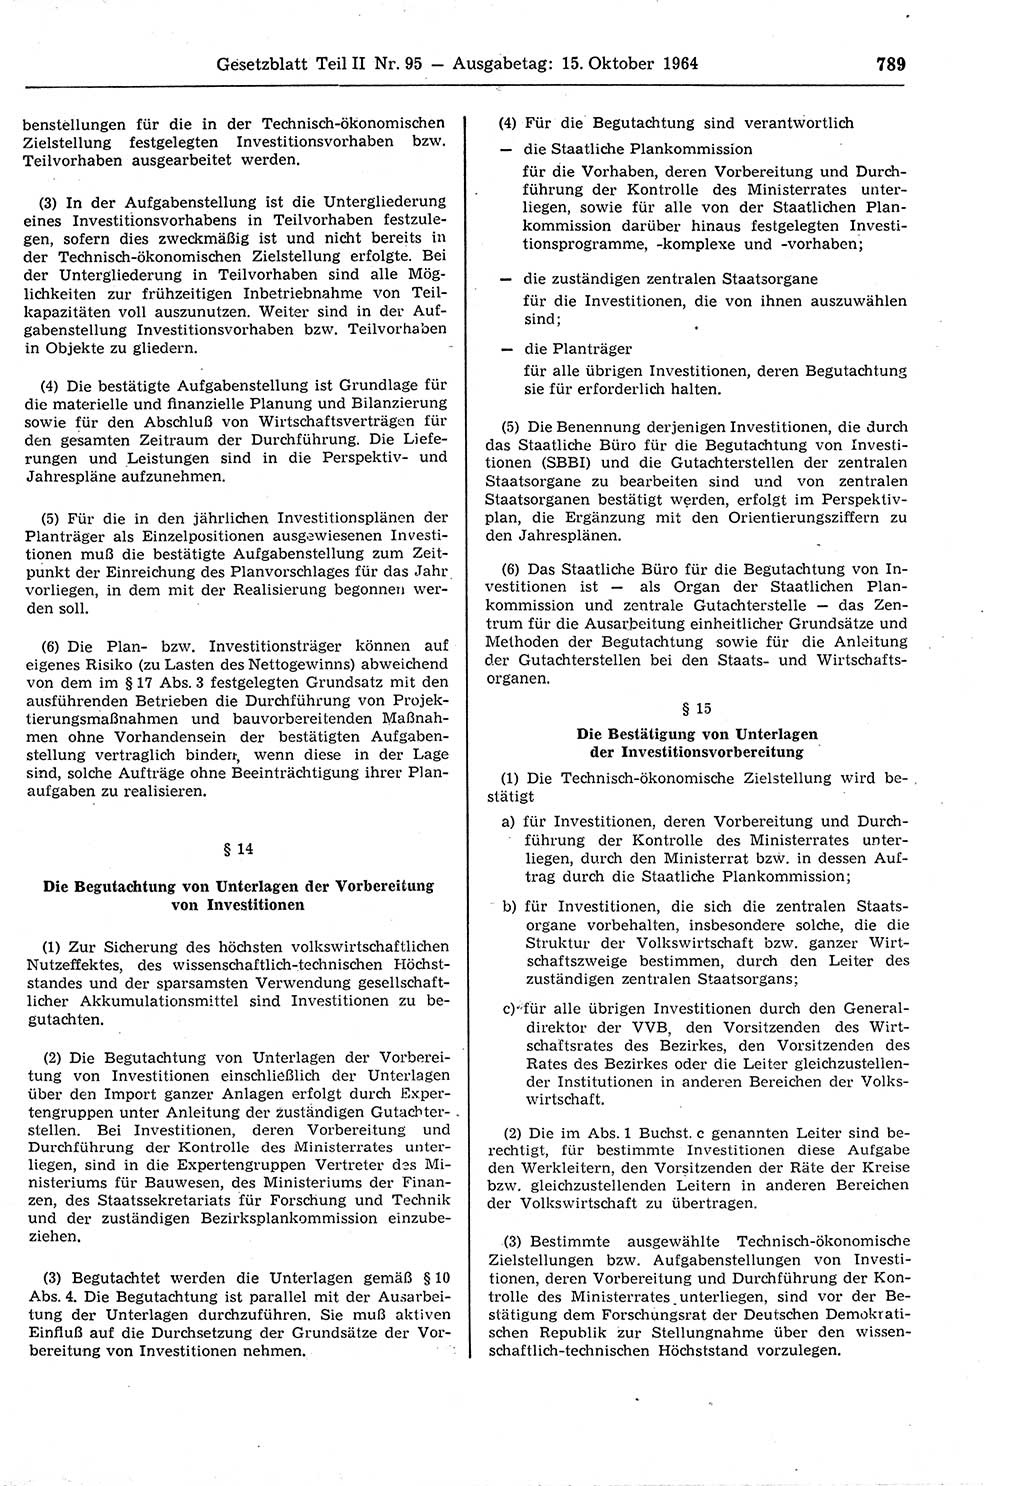 Gesetzblatt (GBl.) der Deutschen Demokratischen Republik (DDR) Teil ⅠⅠ 1964, Seite 789 (GBl. DDR ⅠⅠ 1964, S. 789)